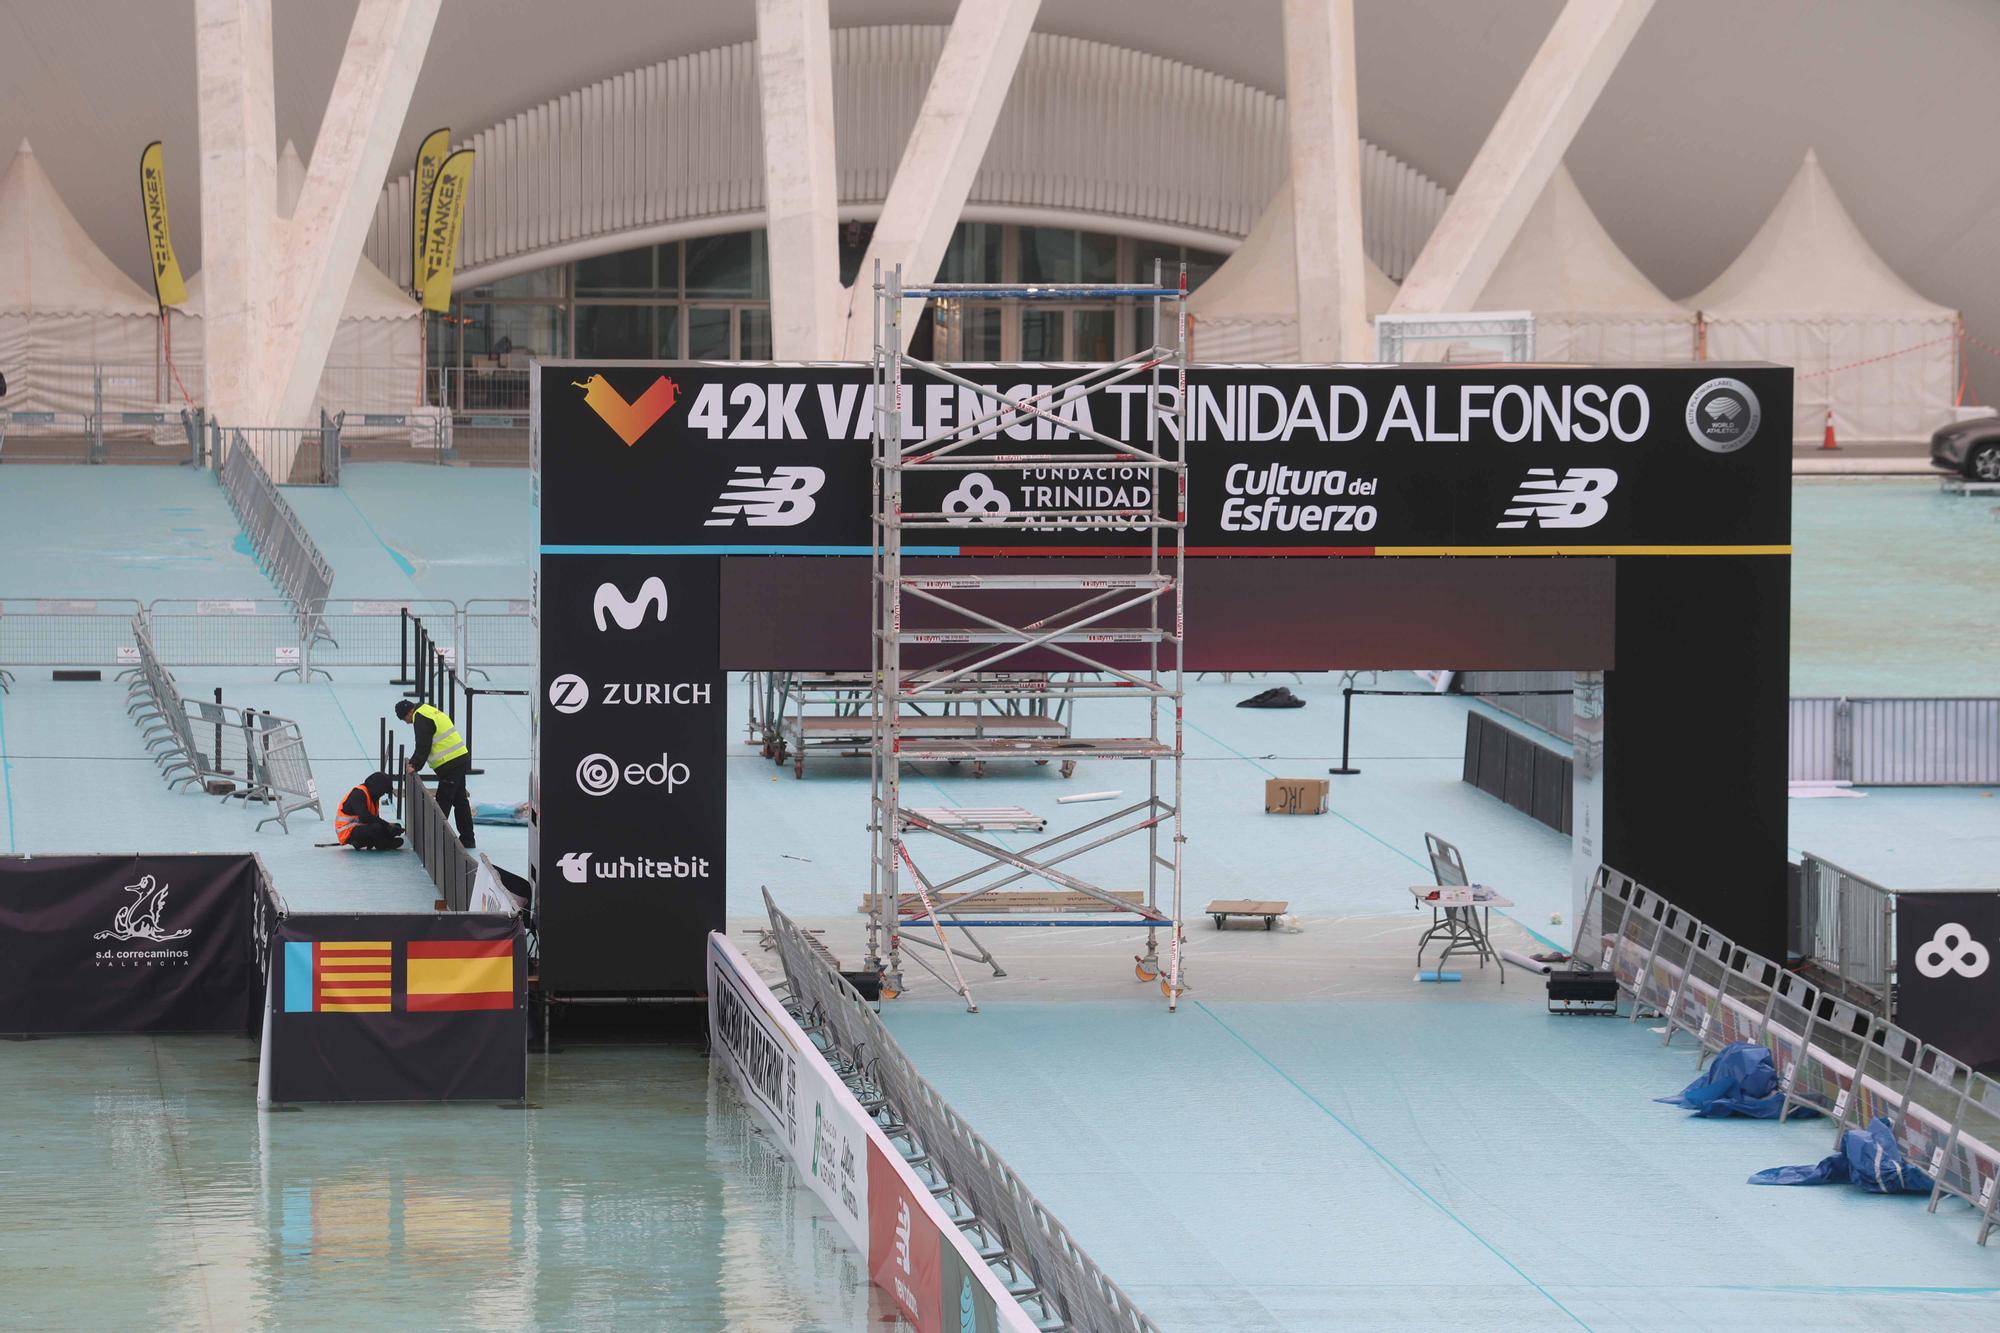 Preparativos para el Maratón Valencia Trinidad Alfonso 2022